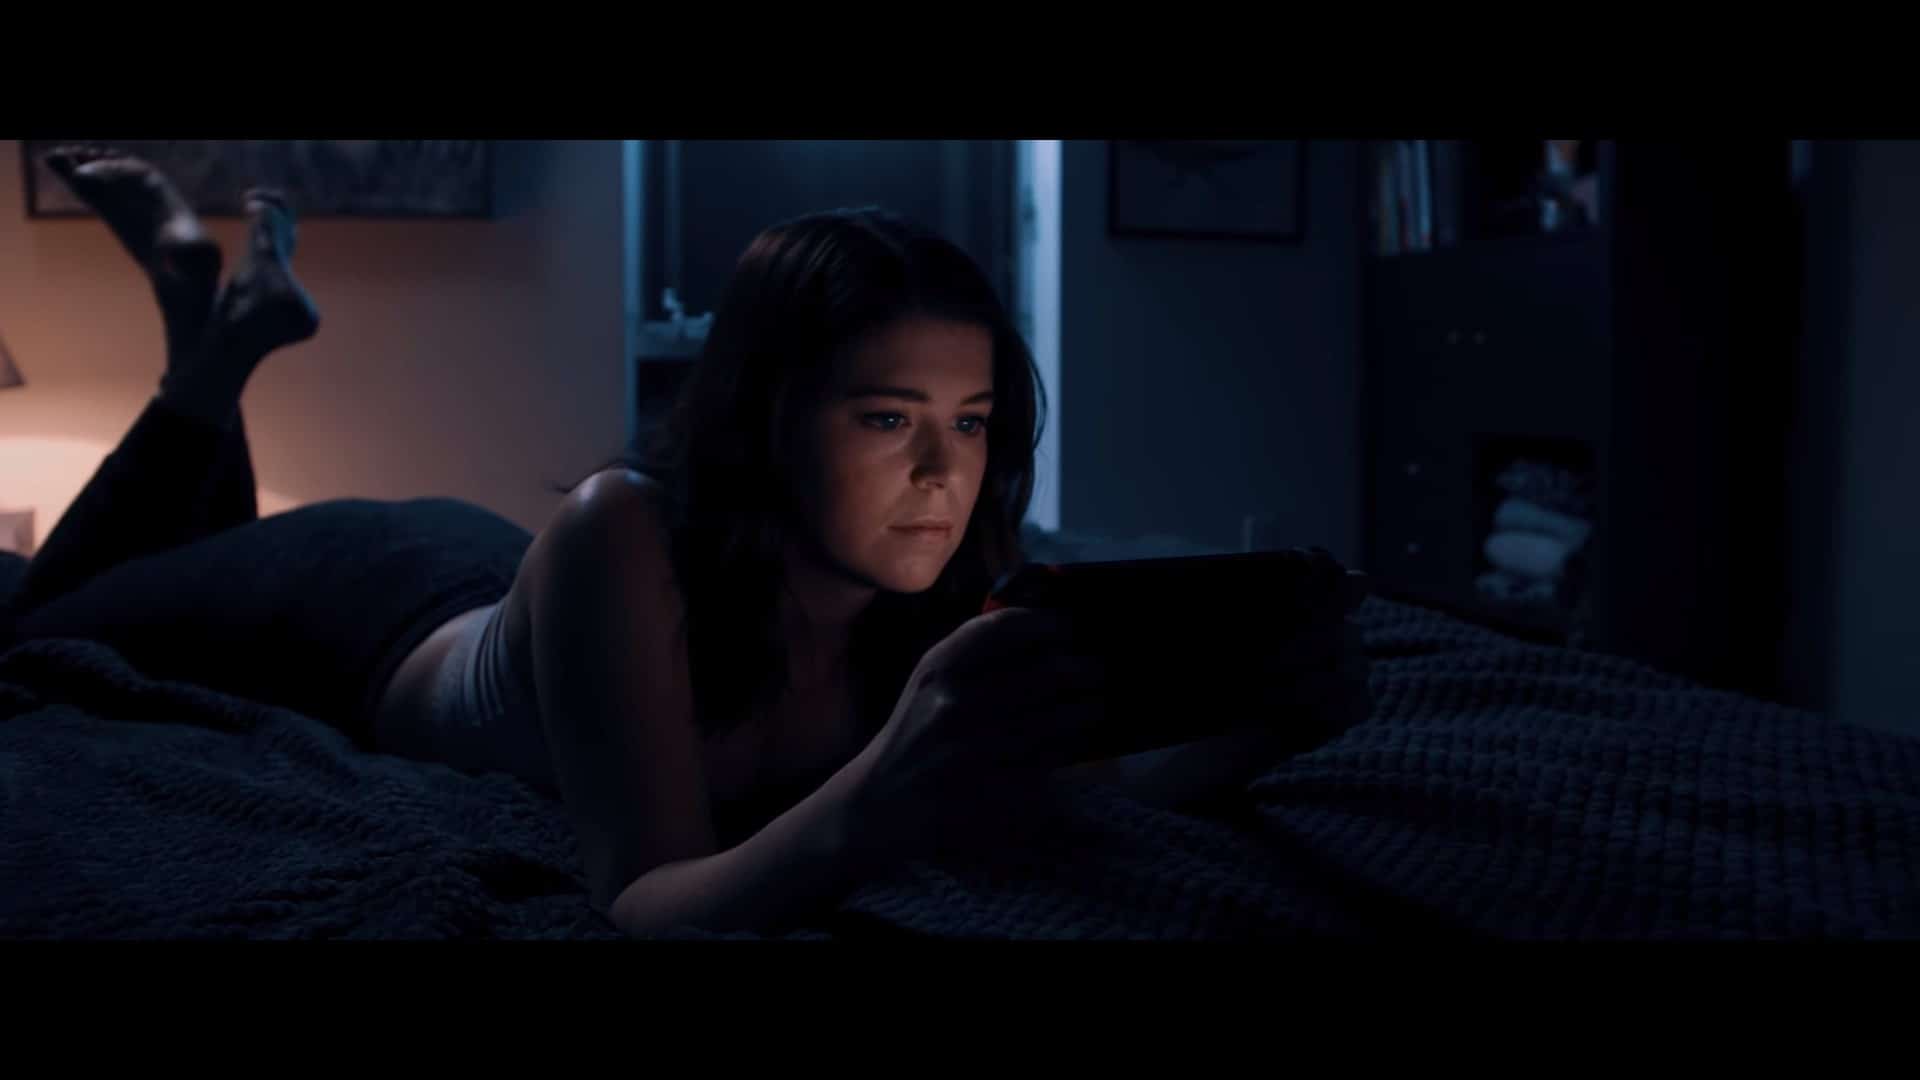 Este es el corto de terror protagonizado por una chica jugando a Animal Crossing: New Horizons